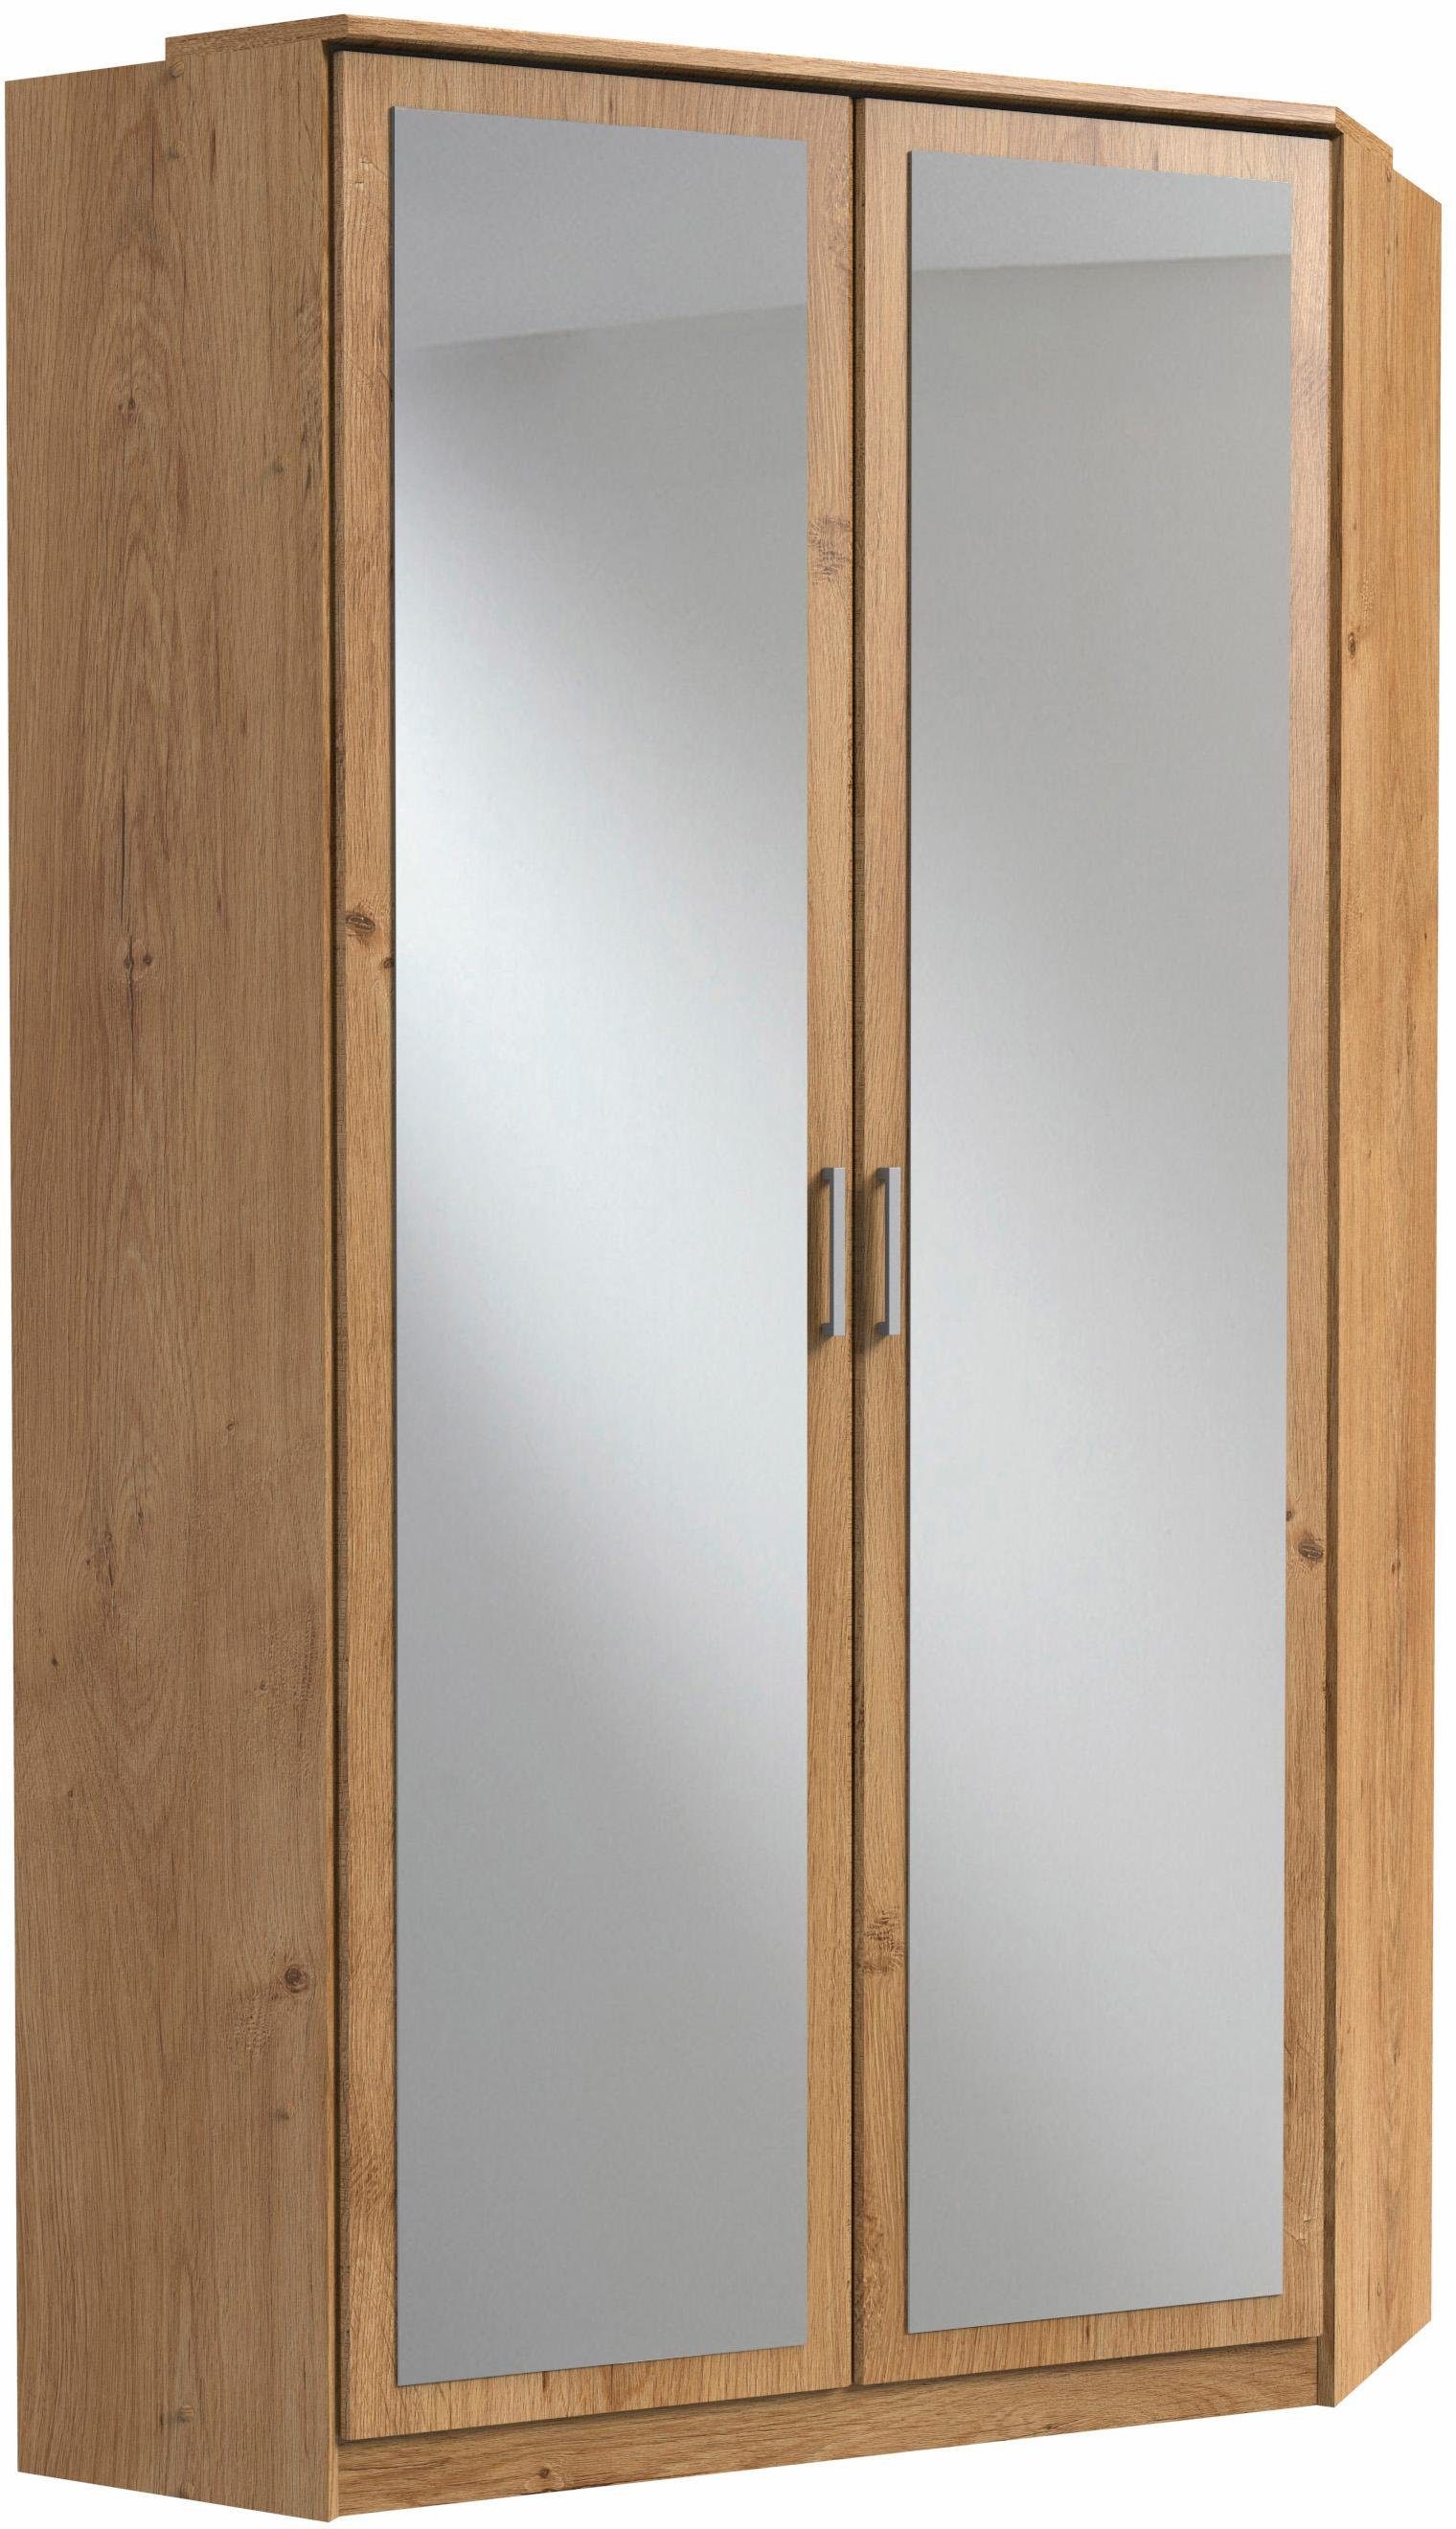 Wimex Eckkleiderschrank Click mit 2 Spiegeltüren plankeneichefarben | Eckkleiderschränke